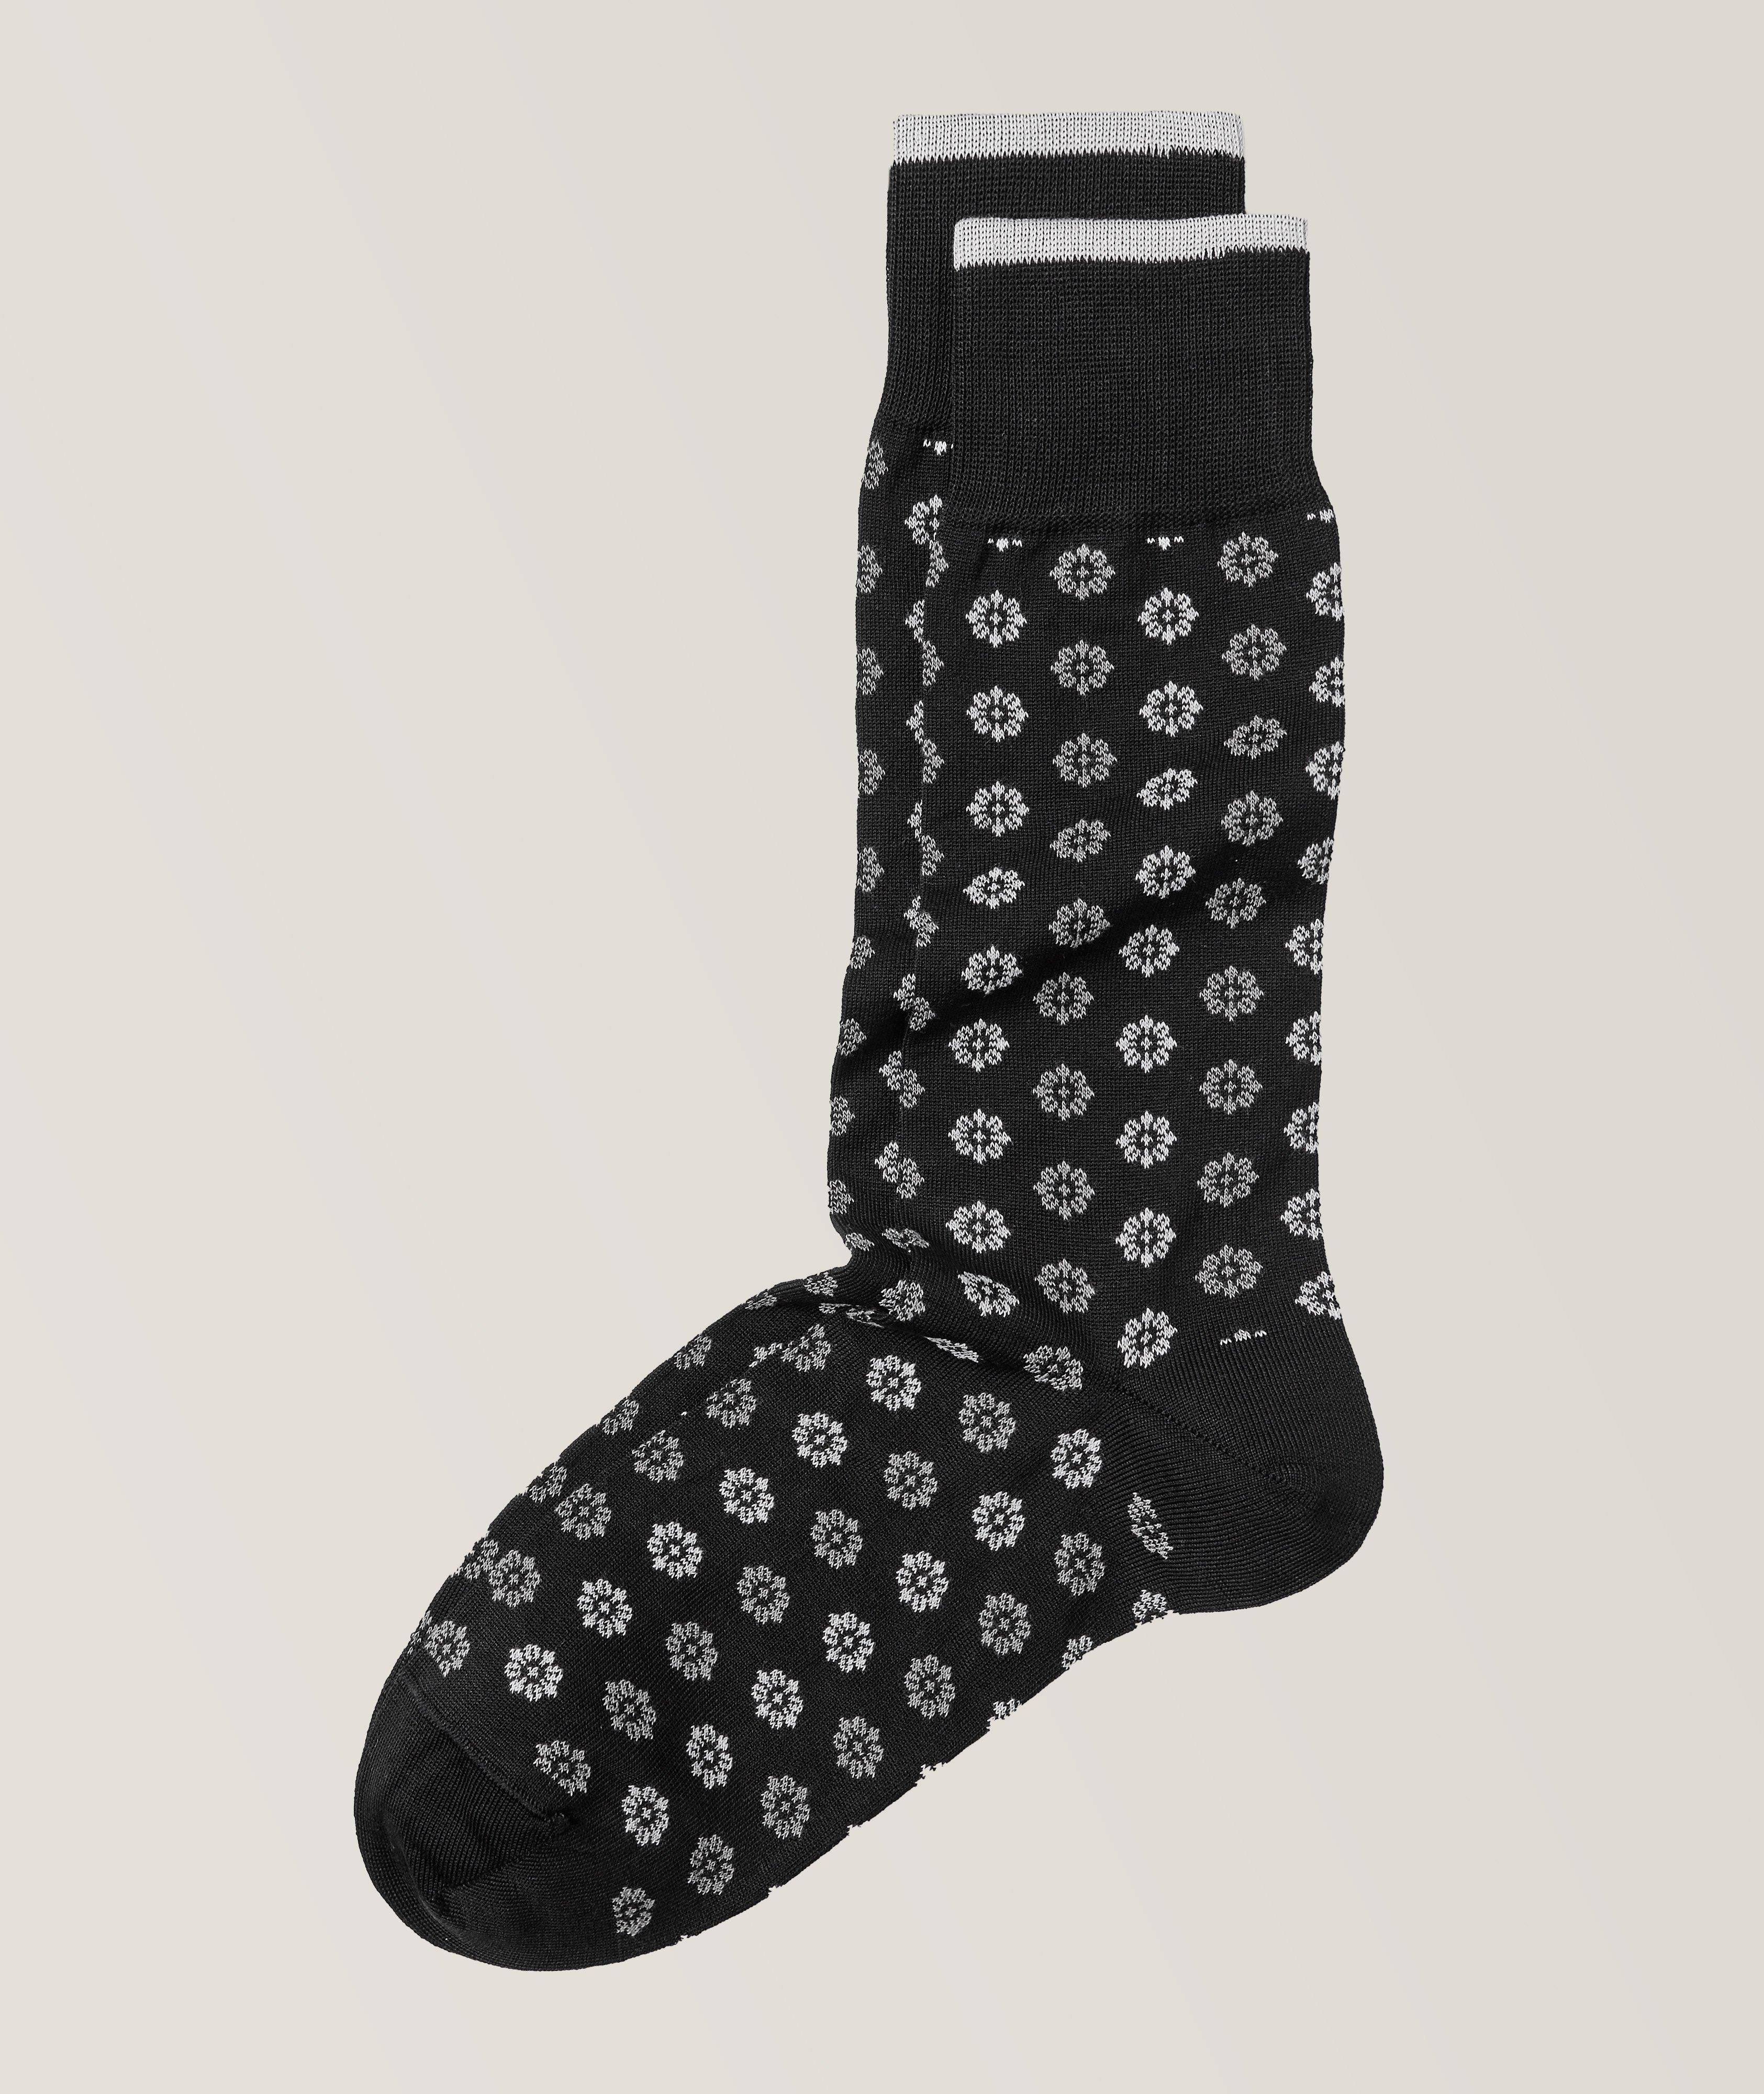 Floral Stretch-Mercerized Cotton Blend Socks image 0